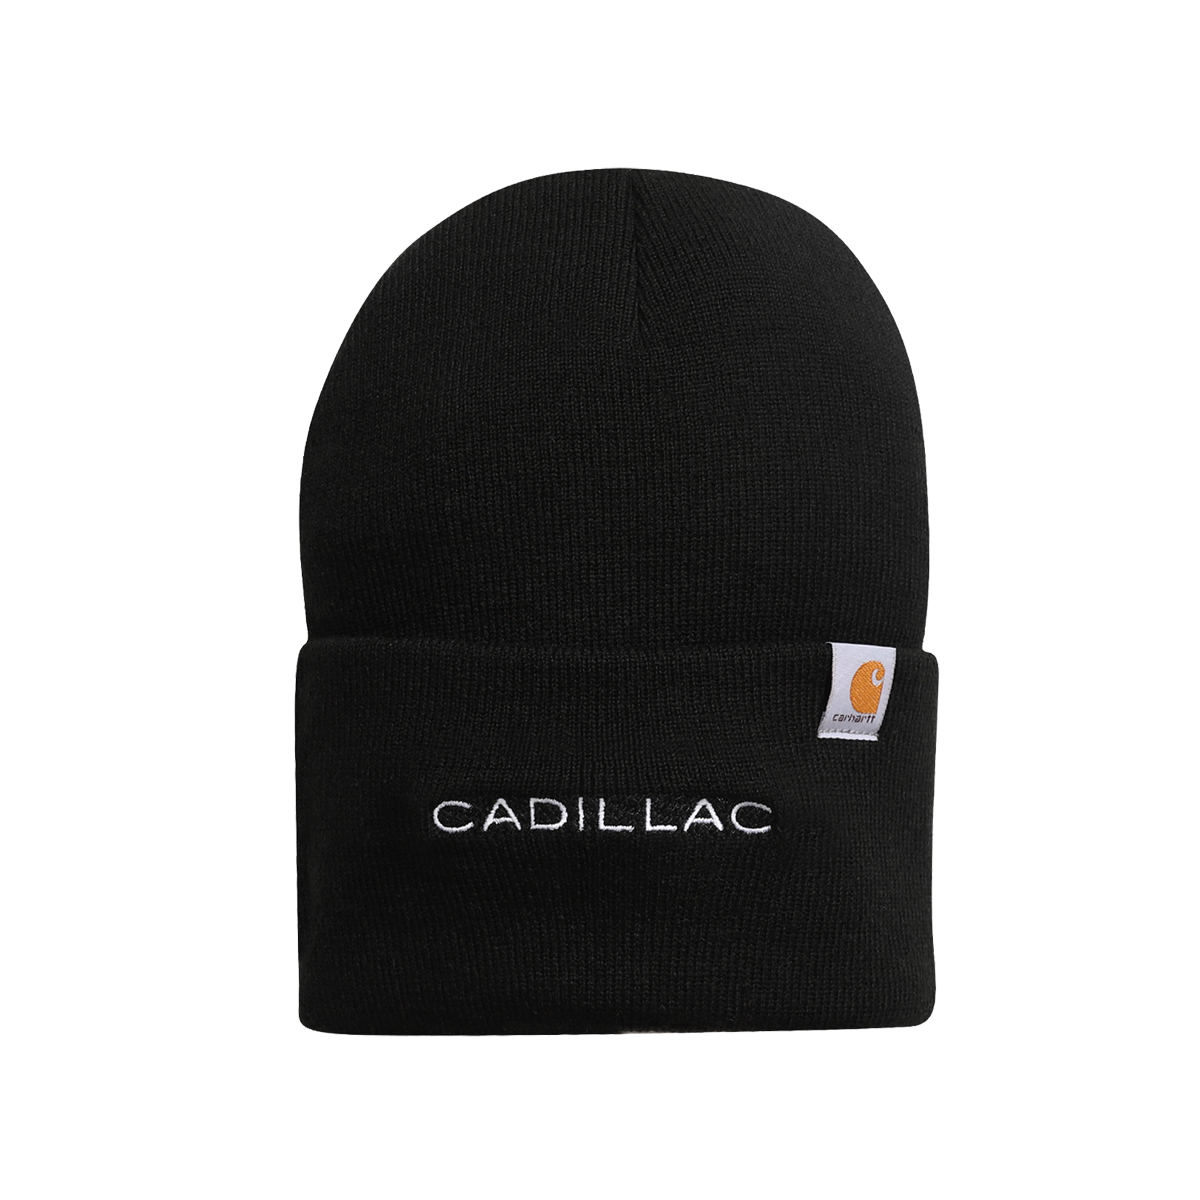 Cadillac Carhartt Knit Cap